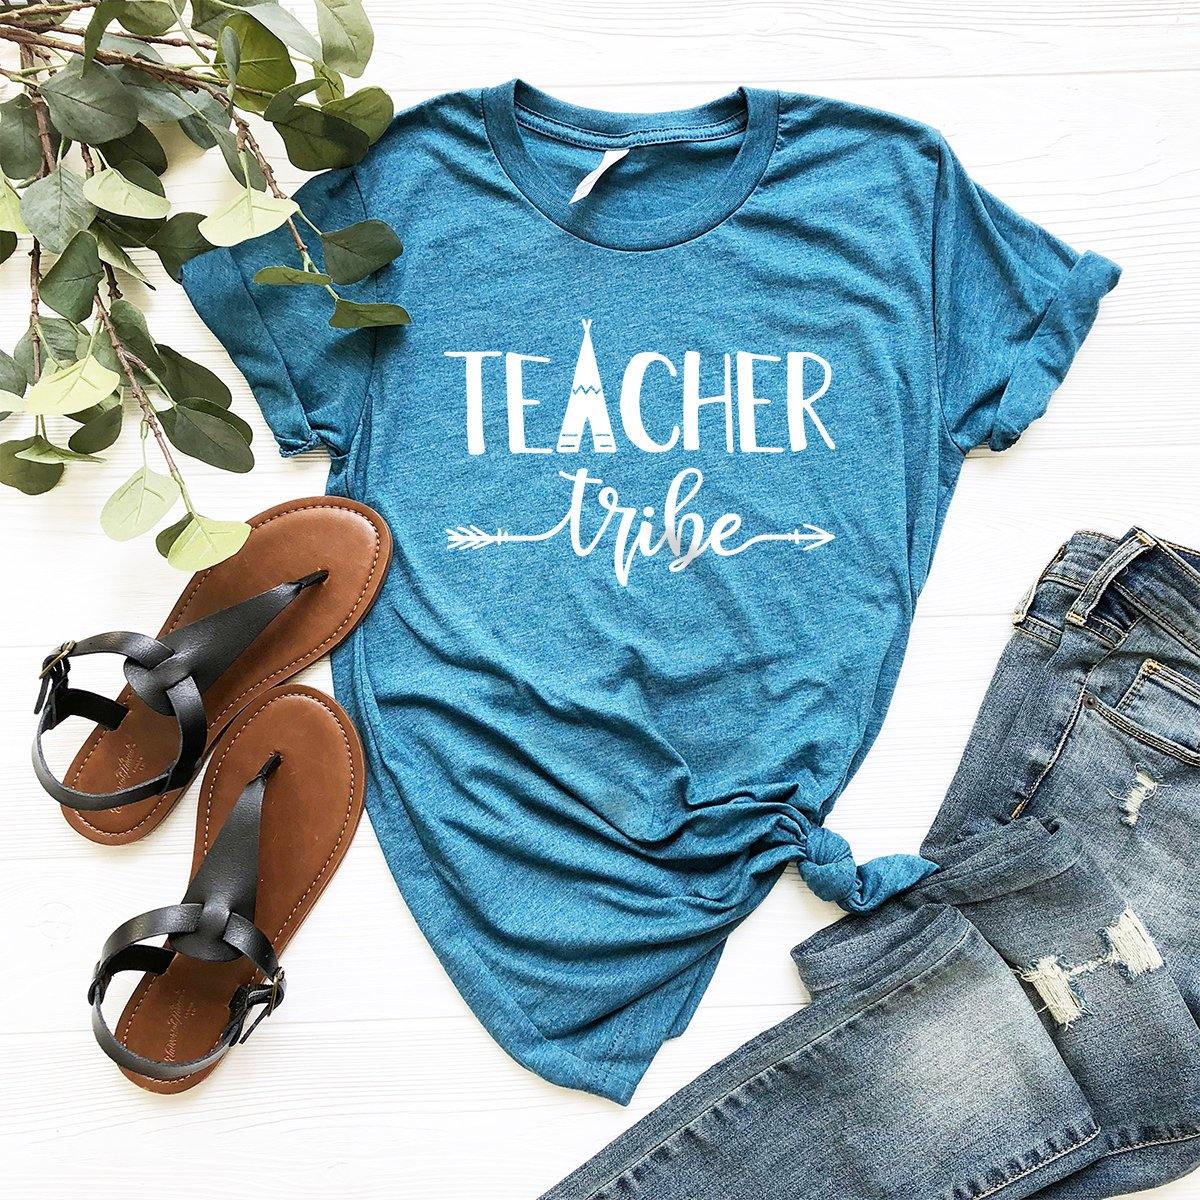 Teacher Tribe T-Shirt, Teacher Gifts, Funny Teacher Shirt, Cute Educator Tee, Teacher Life Shirt, Best Teacher Tshirt, Custom Teacher Shirt - Fastdeliverytees.com